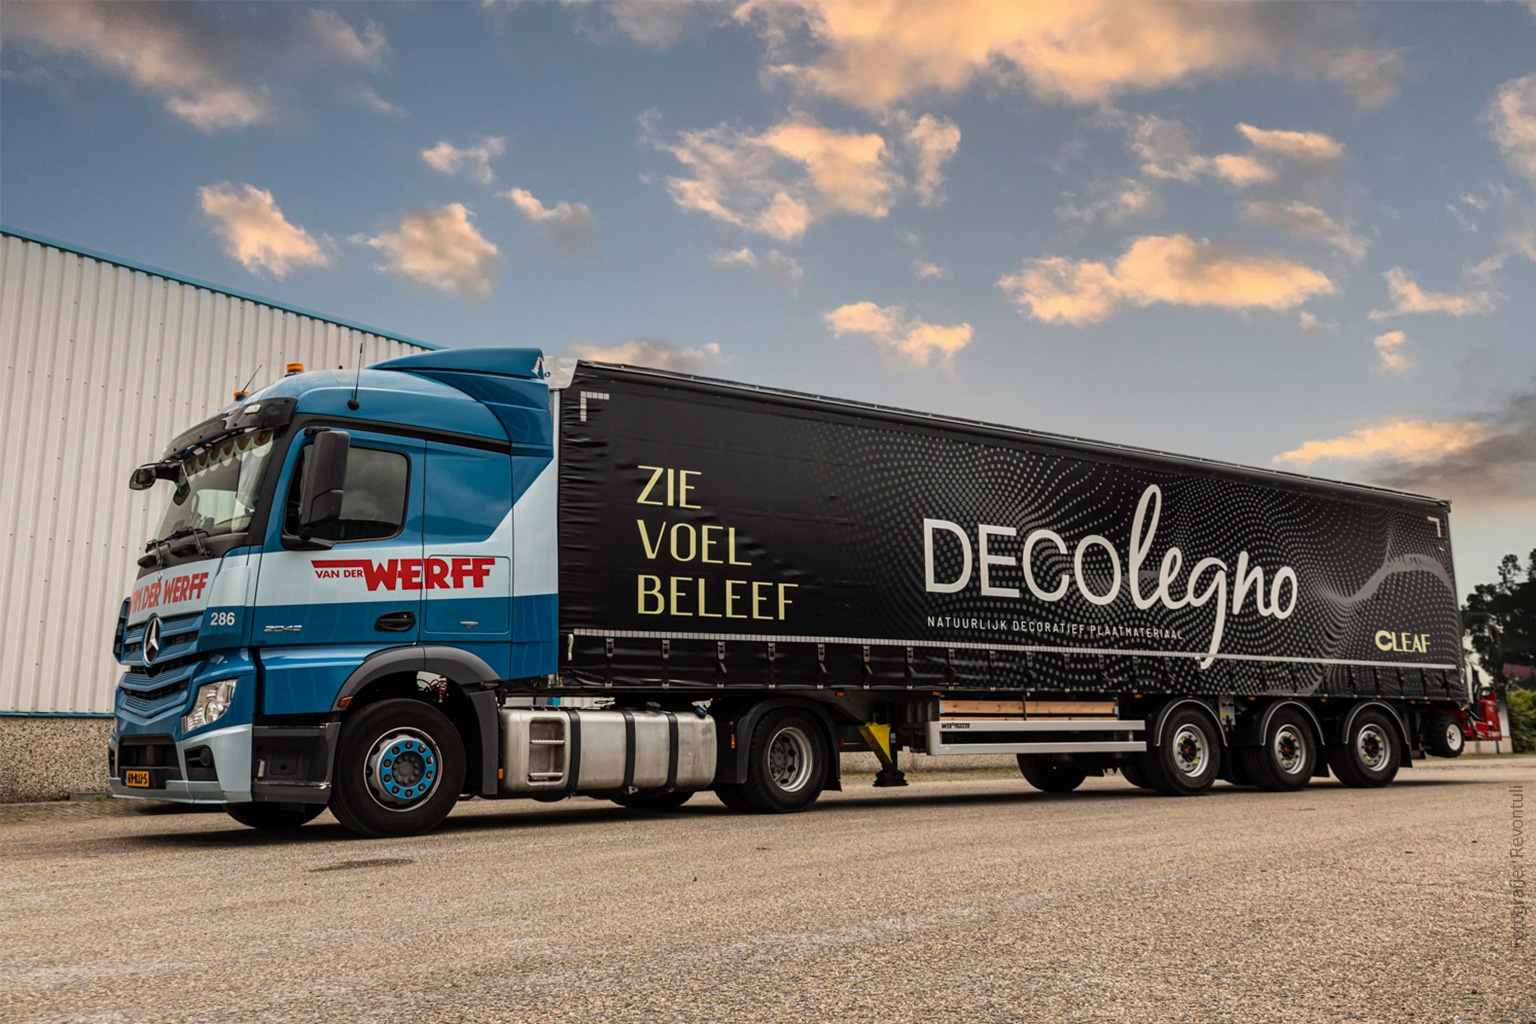 Vrachtwagen van van der werff met DecoLegno logo